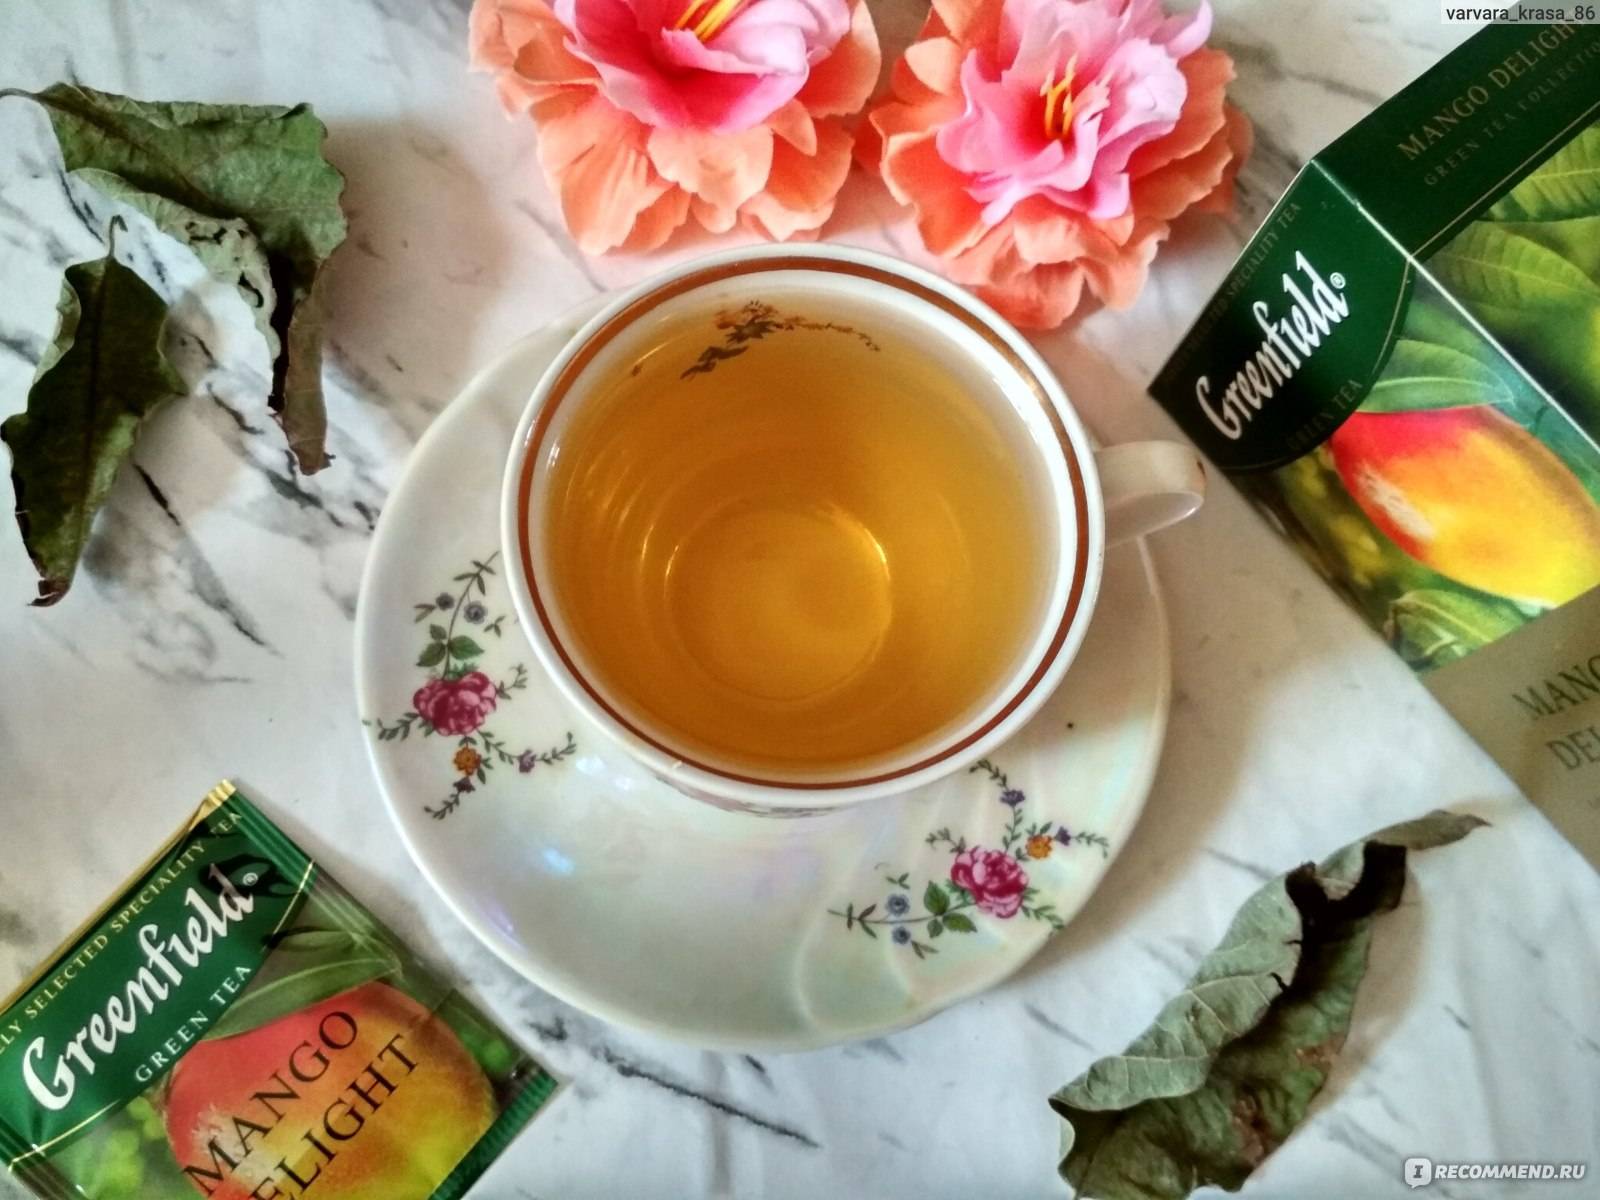 32 разновидности чая гринфилд на любой вкус: зеленый, черный, травяной, подарочный | горячая чашка